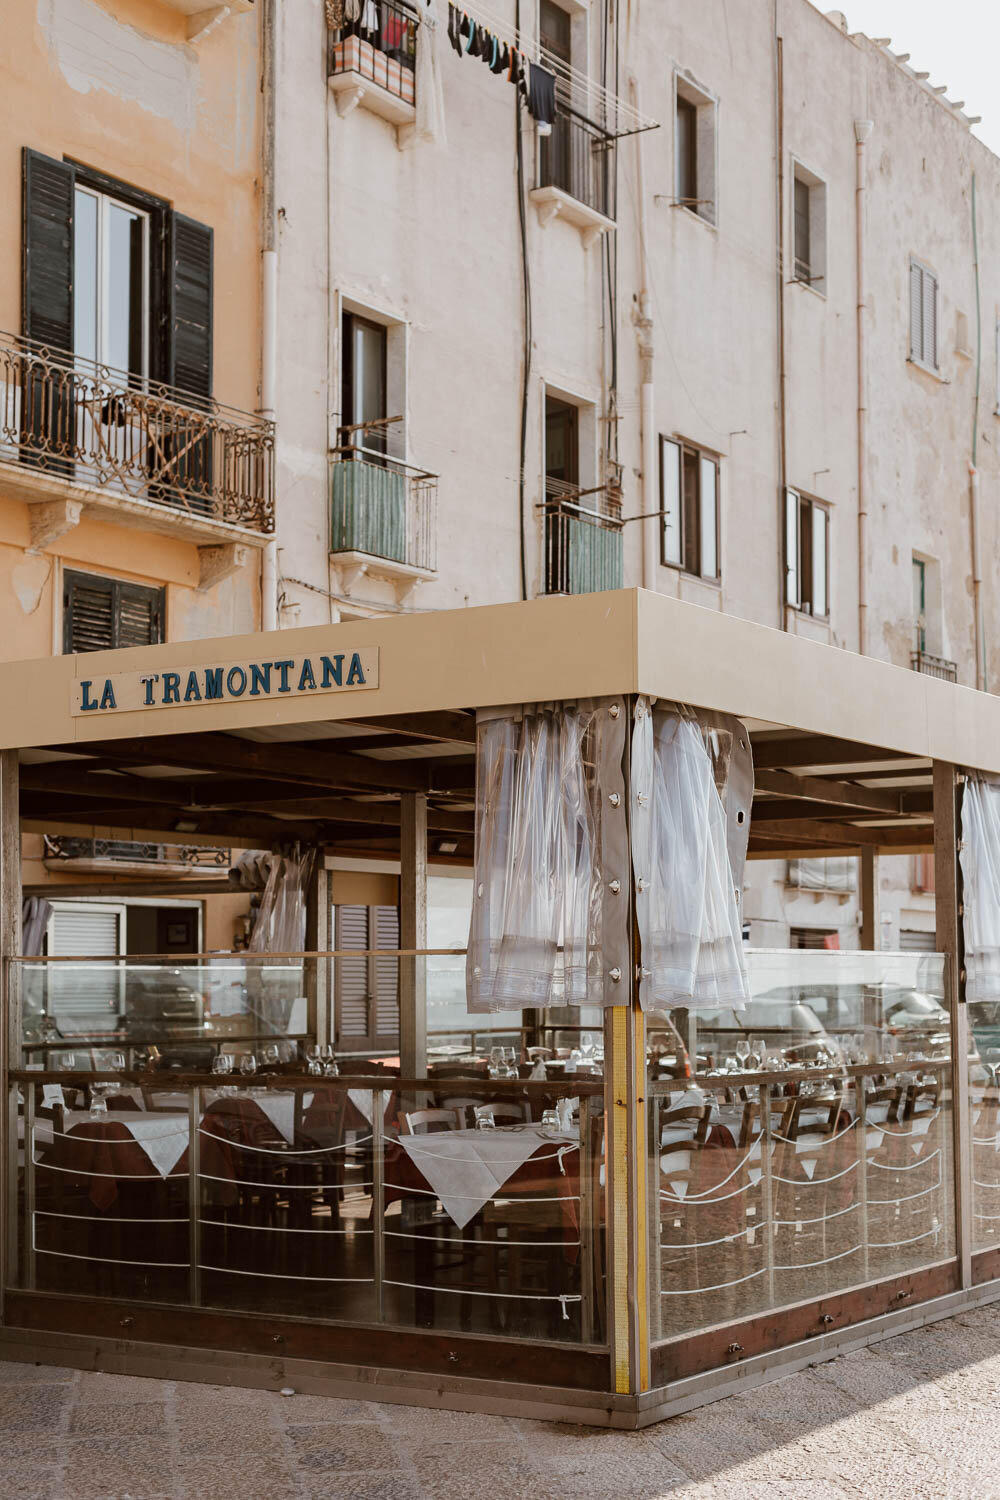 La Tramonata Restaurant, Trapani, Sicily